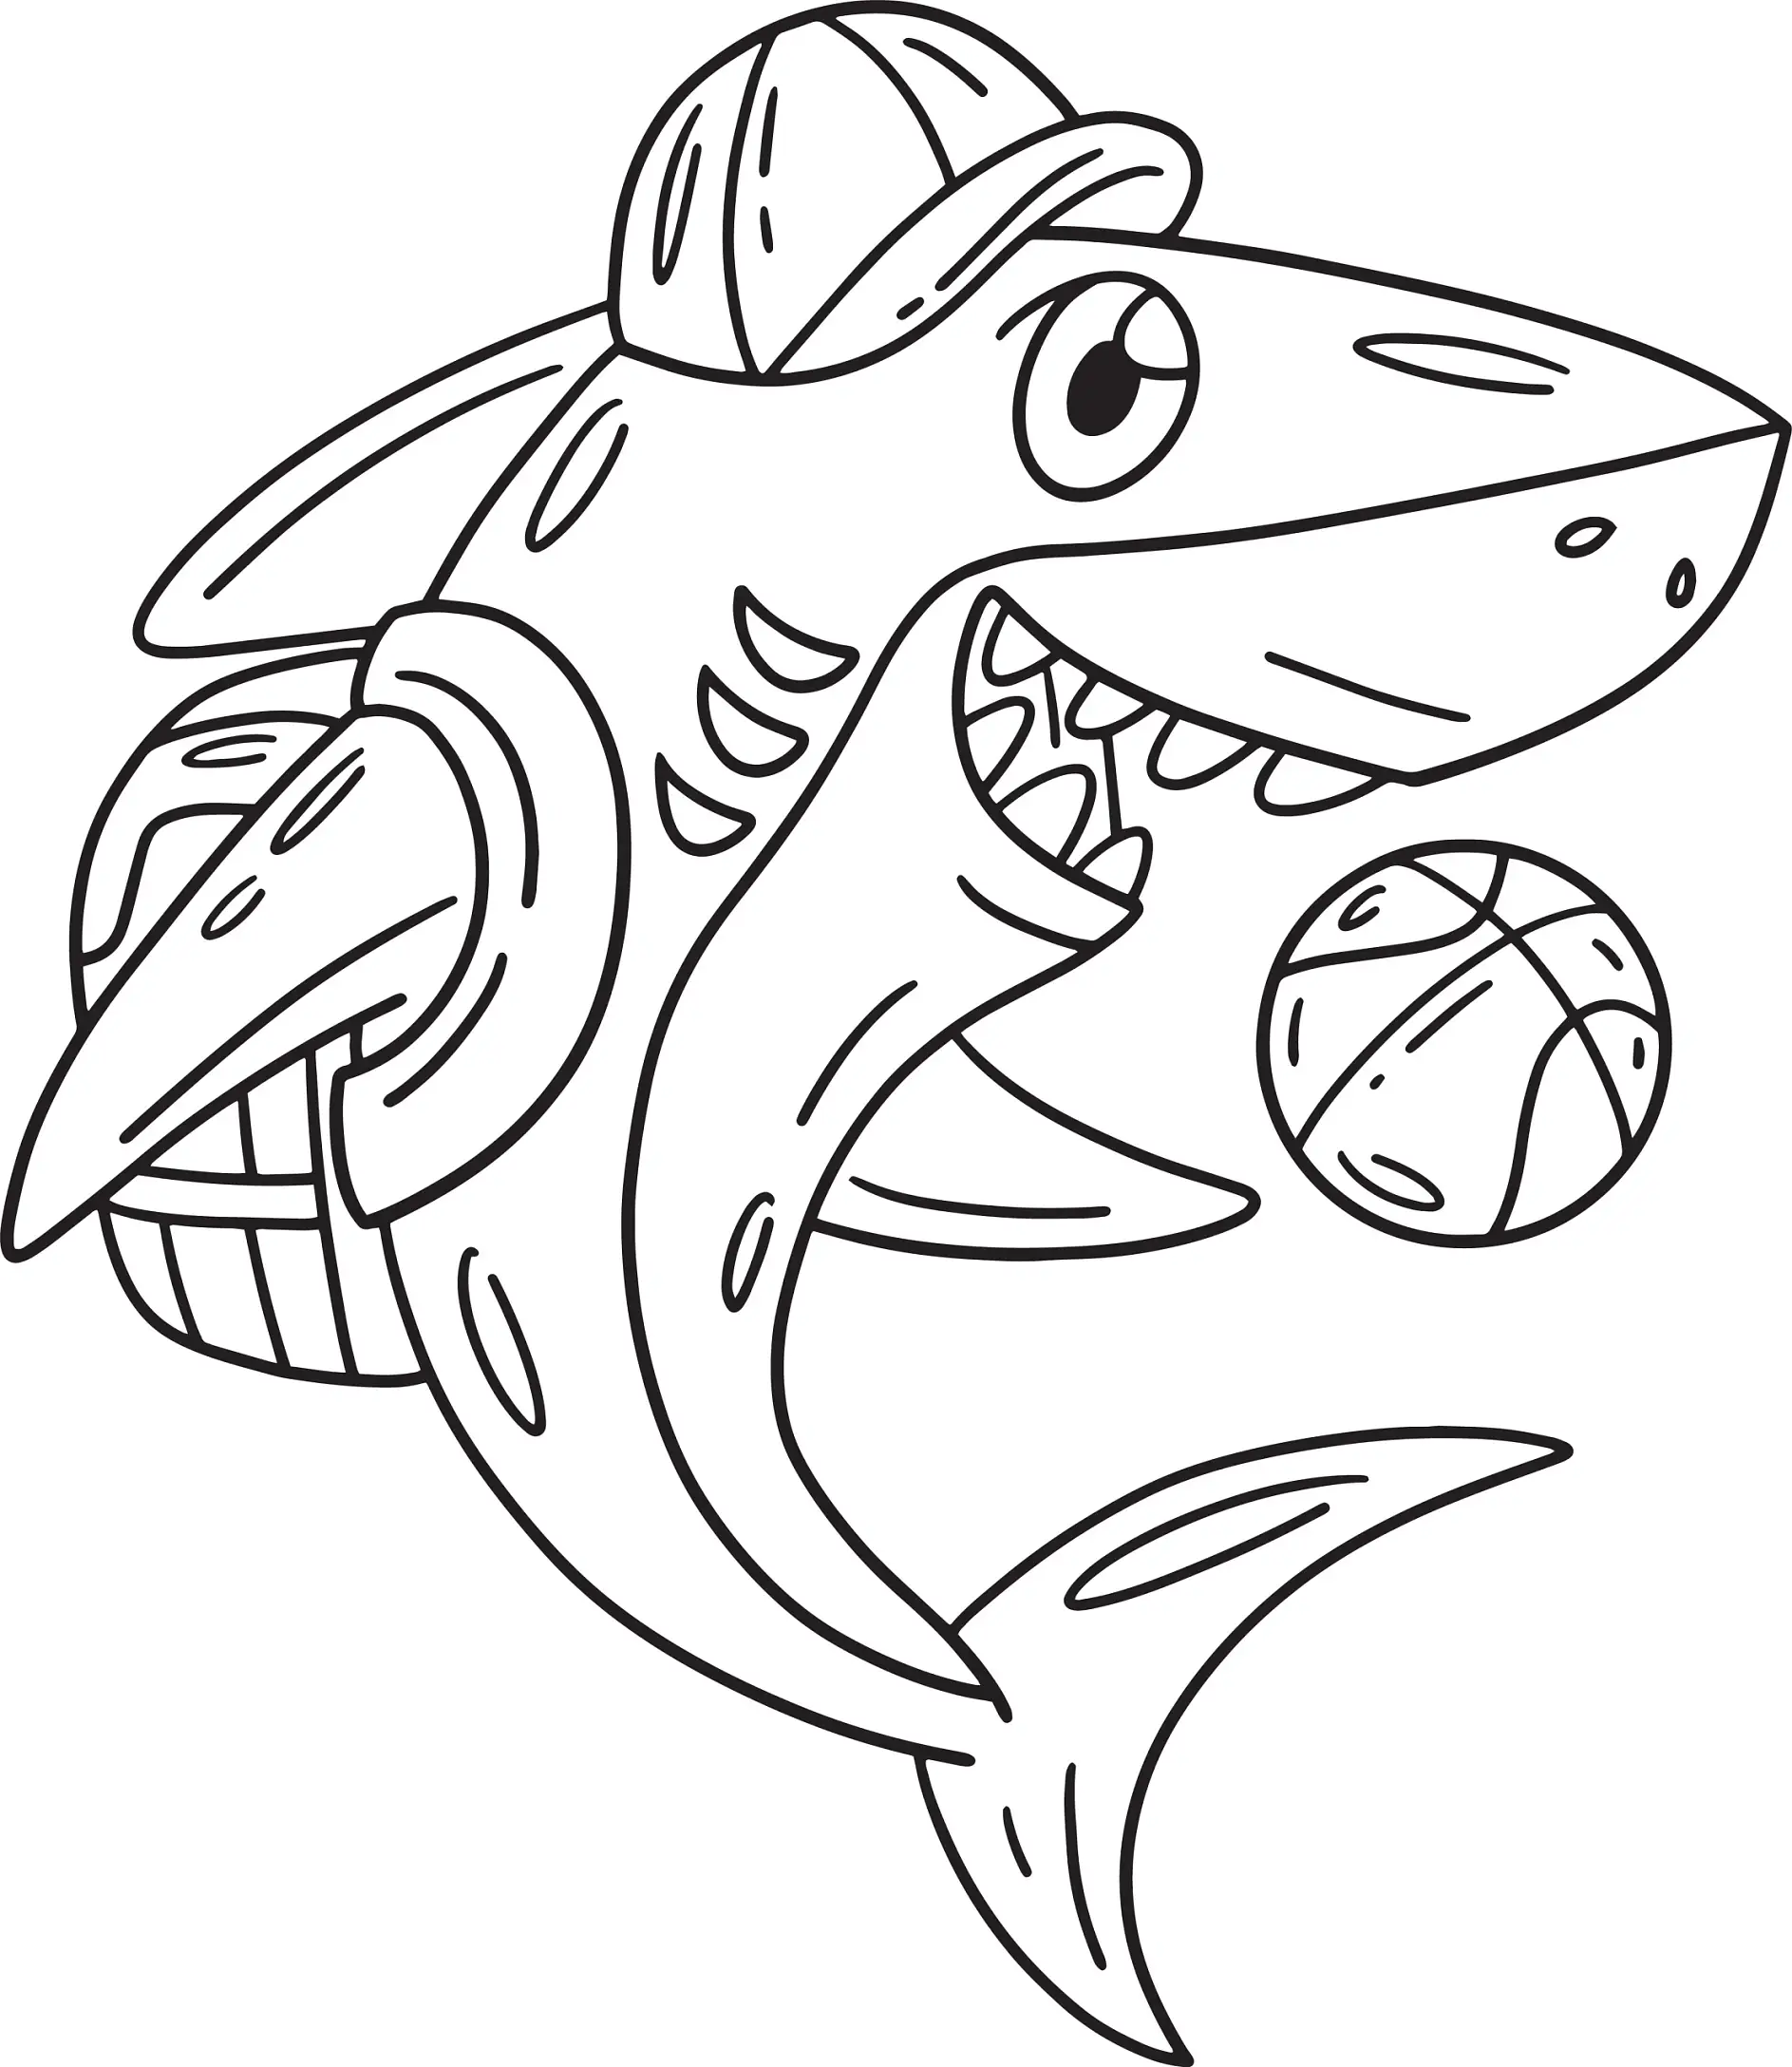 Ausmalbild Hai mit Rucksack und Kappe spielt Basketball